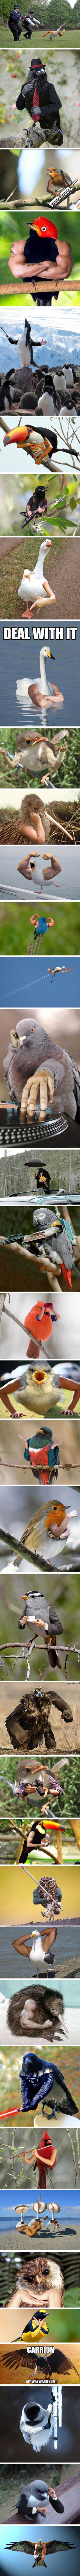 Otros - Si a un pájaro le añades brazos humanos intimida mucho más